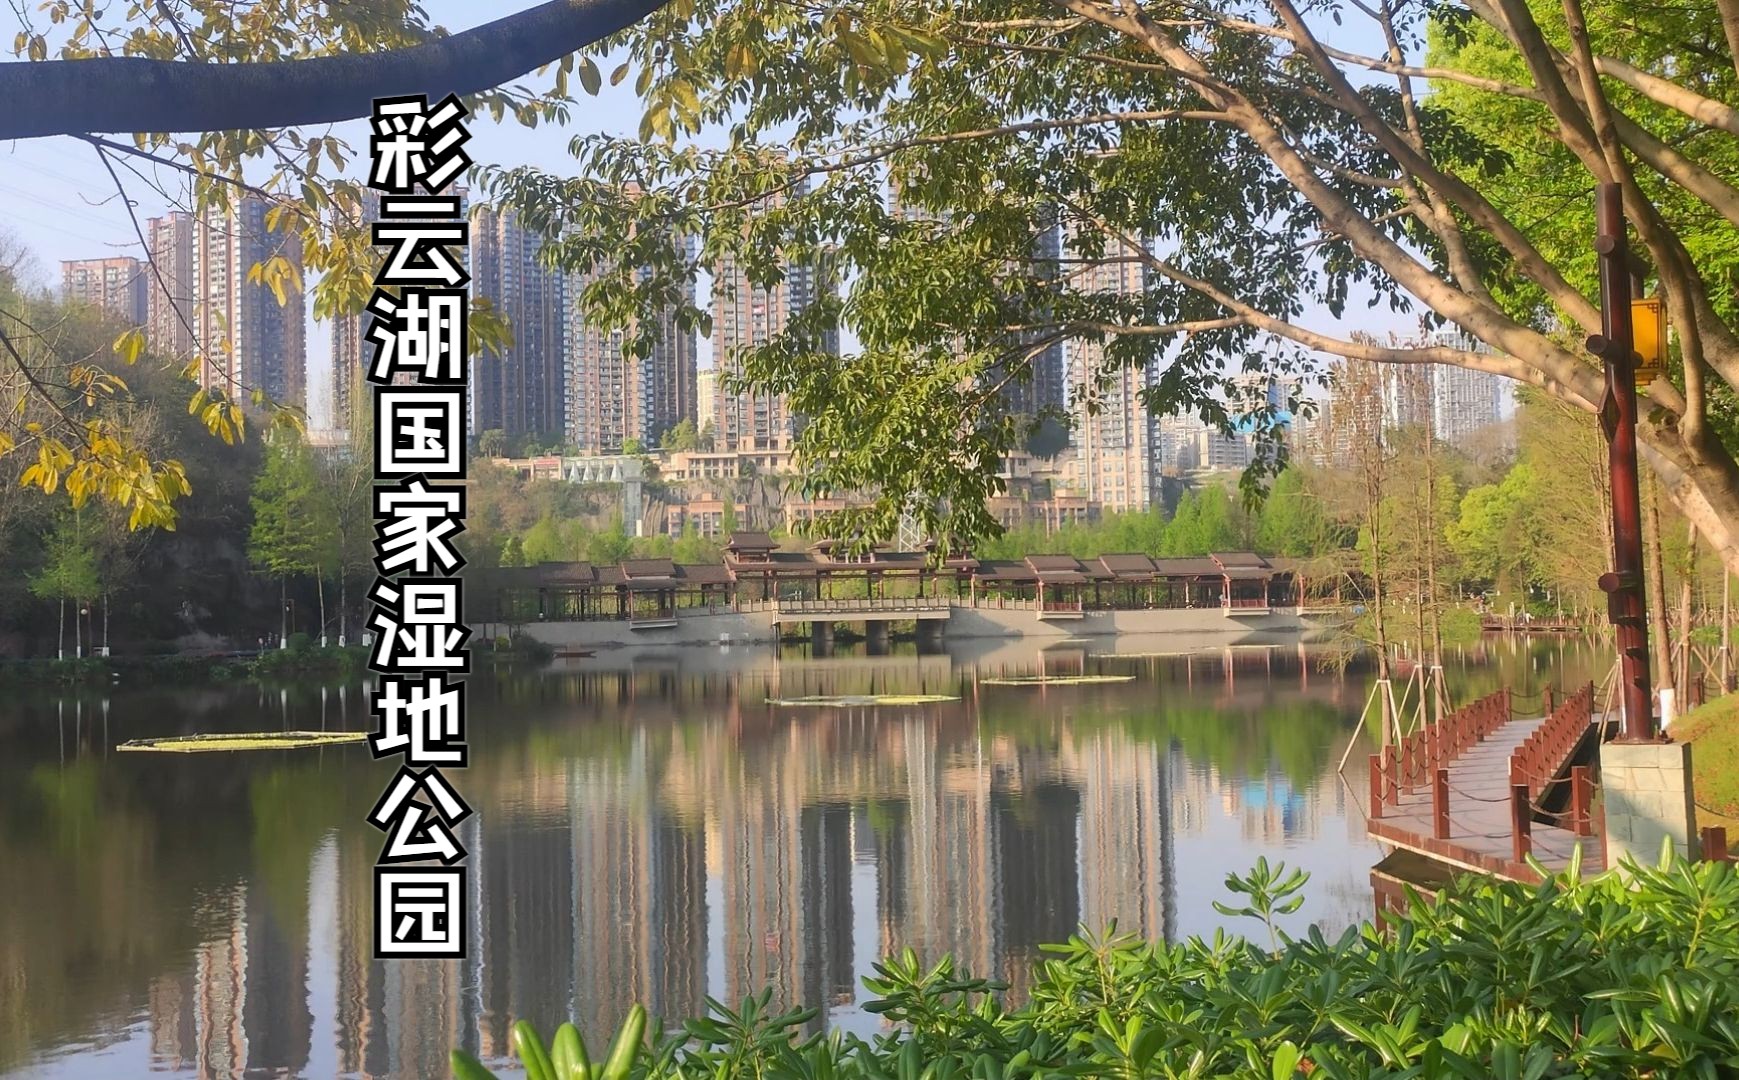 重庆彩云湖国家湿地公园游记 i 让自己心里得到彻底放松